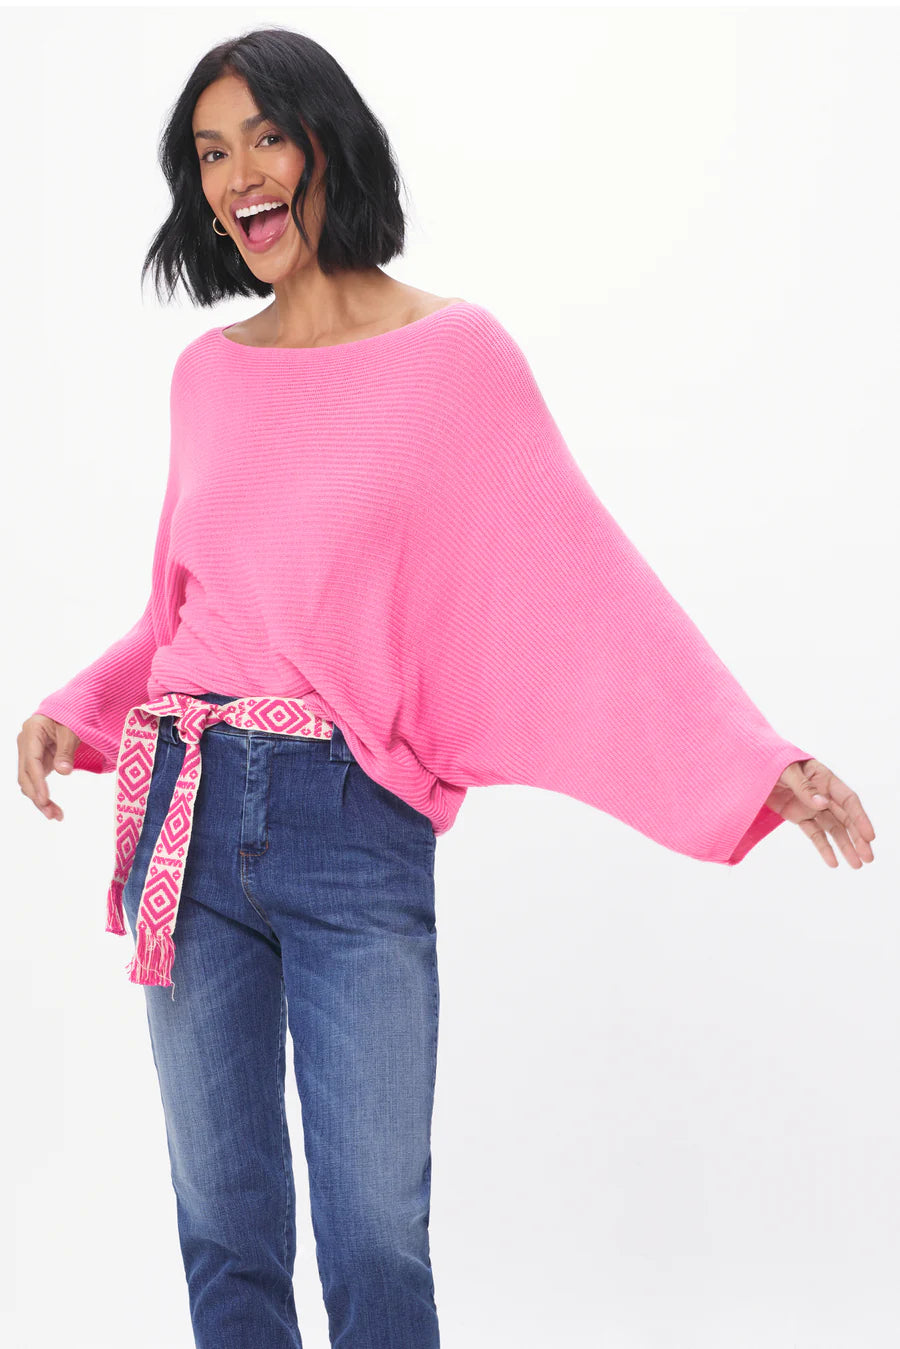 Ace Soft Knit Rib Batwing Sweater Candy Pink